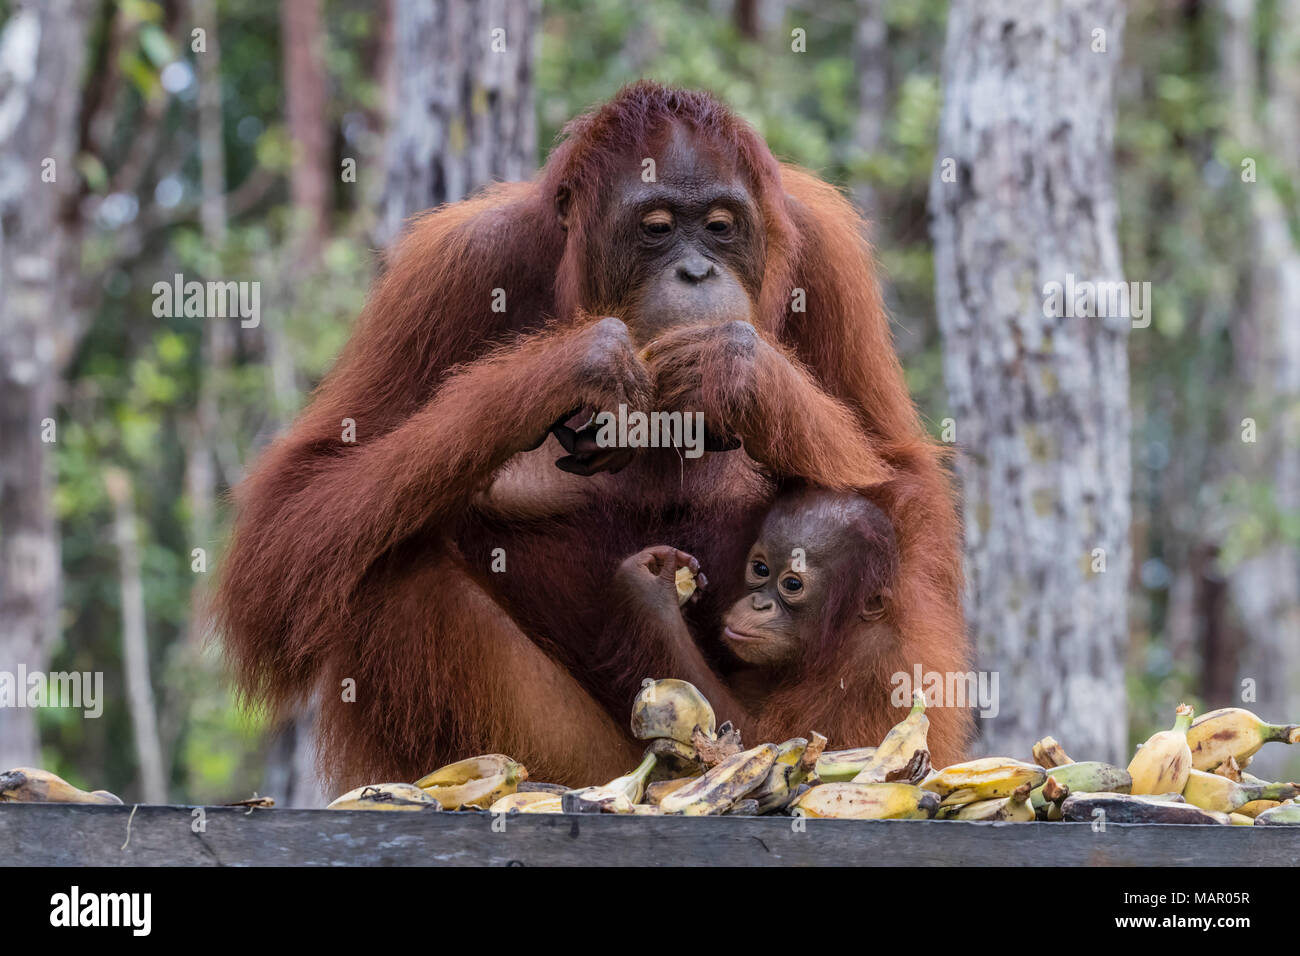 La madre e il bambino Bornean orangutan (Pongo pygmaeus), Buluh Kecil River, Borneo, Indonesia, Asia sud-orientale, Asia Foto Stock